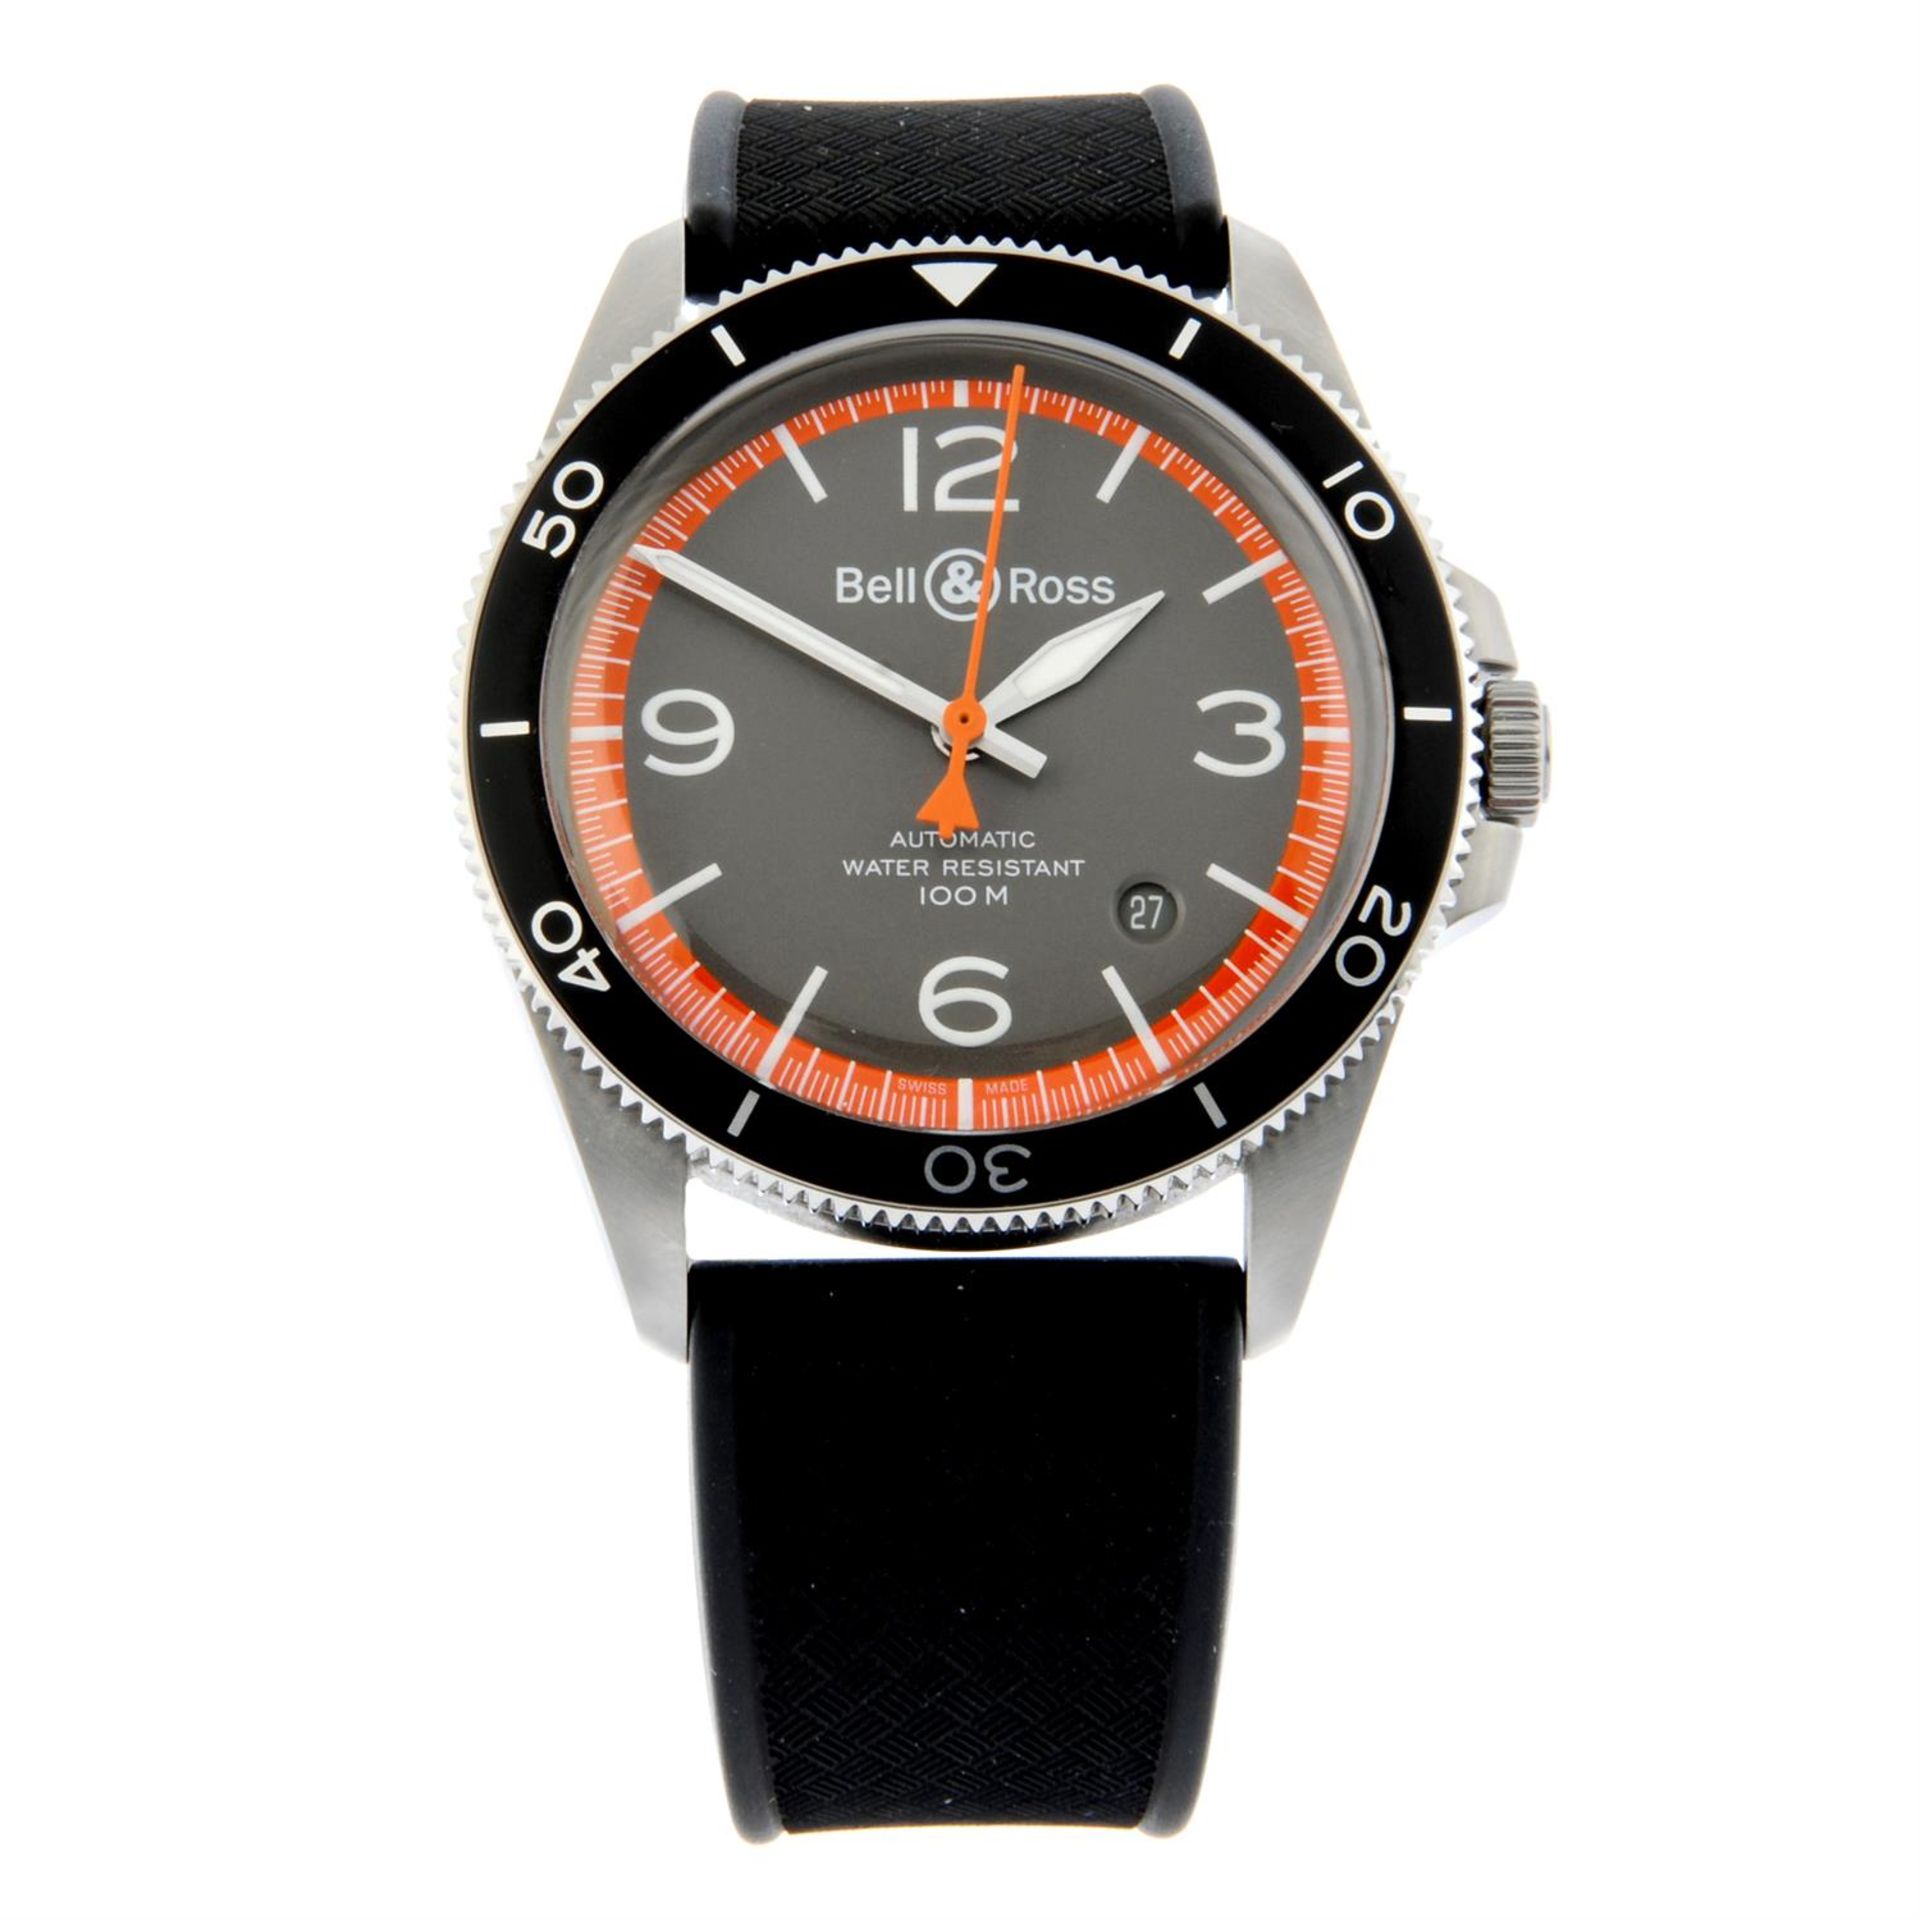 Bell & Ross - a wrist watch, 41mm.